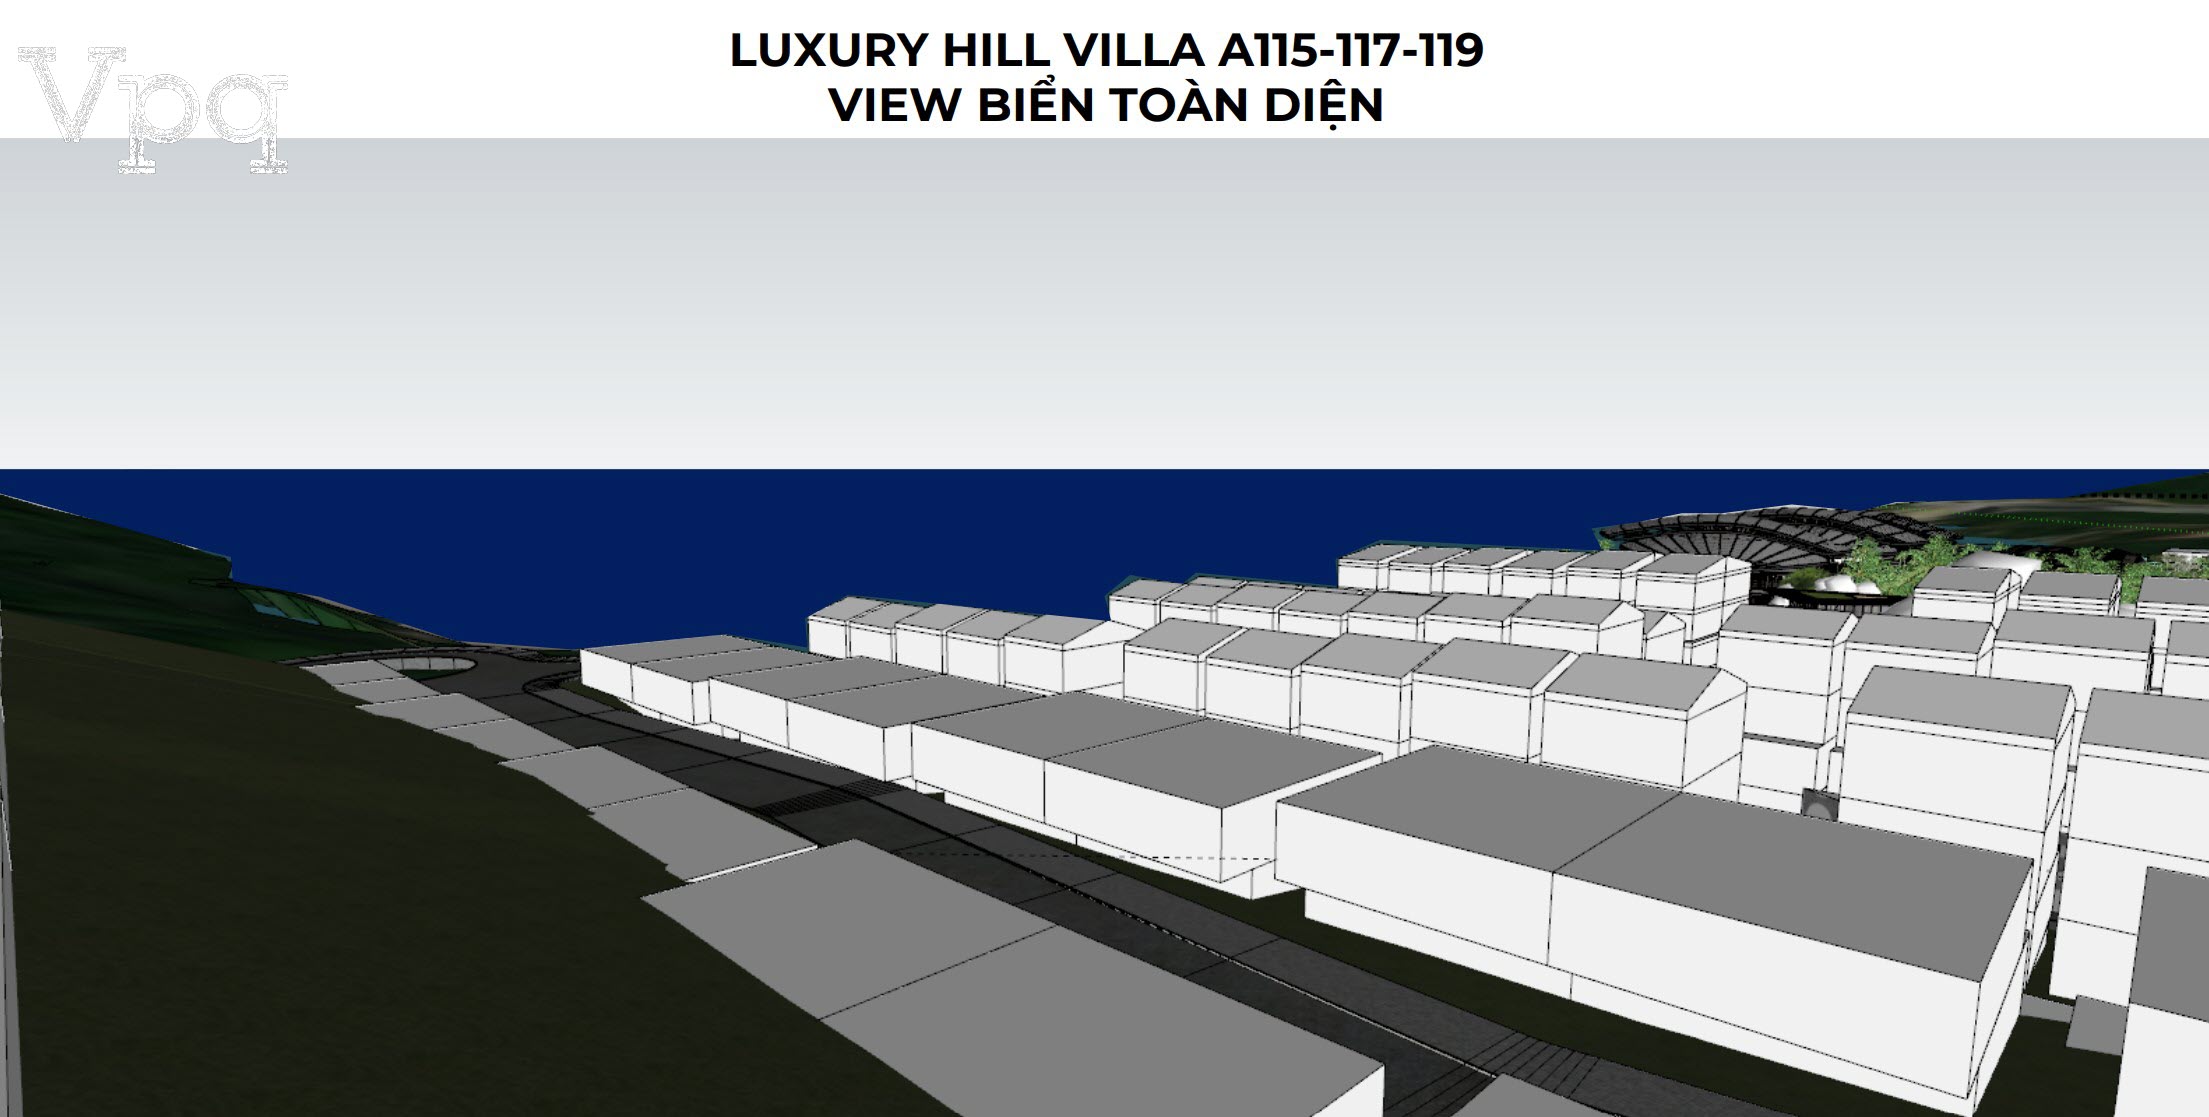 Luxury Hill Villa A115-A117-A119 view biển toàn diện